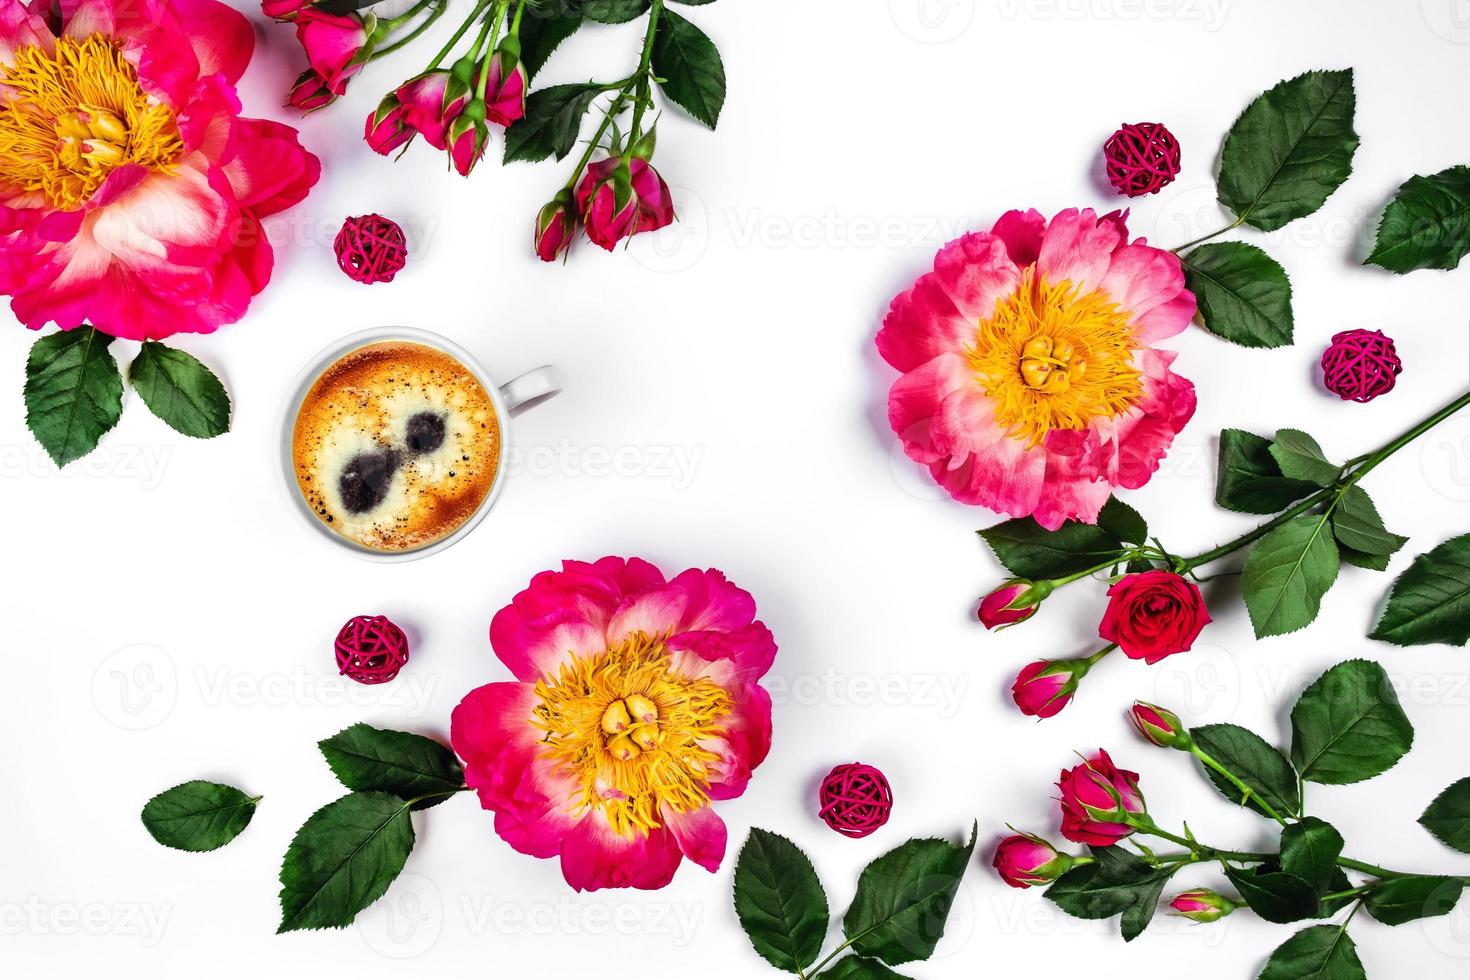 xícara de café da manhã e lindas rosas e peônias em fundo branco, vista superior. foto